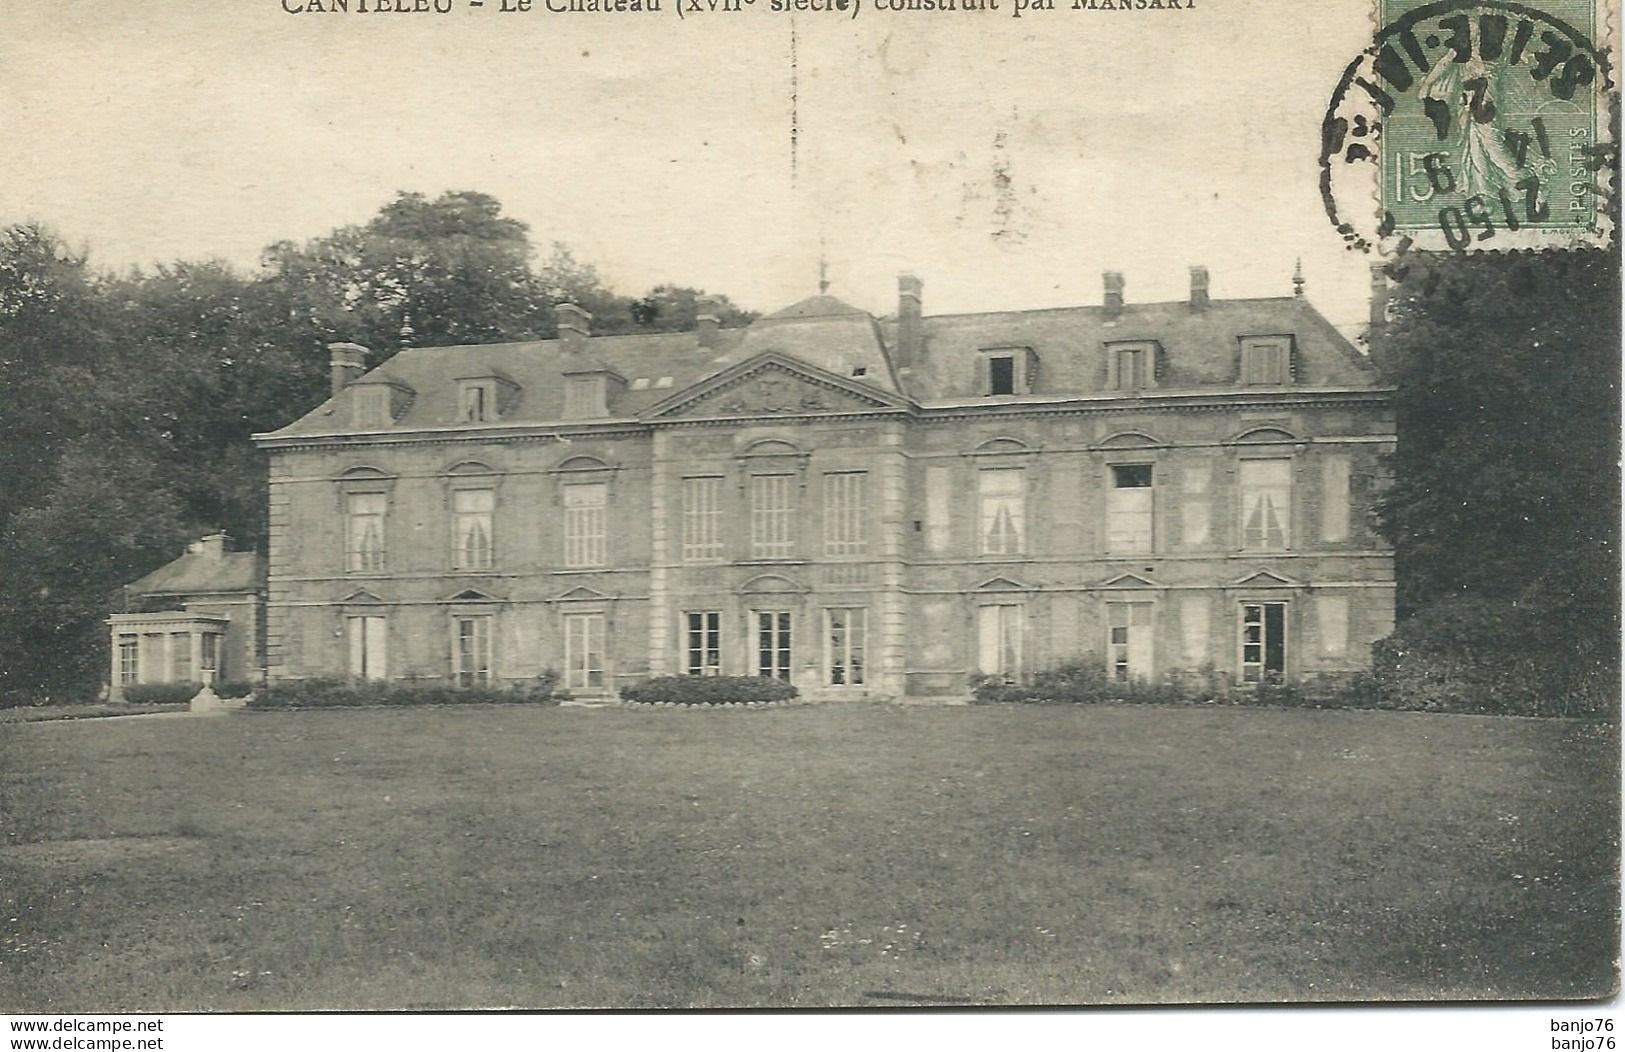 Canteleu (76) - Le Château (XVIIe Siècle) Construit Par Mansart - Canteleu